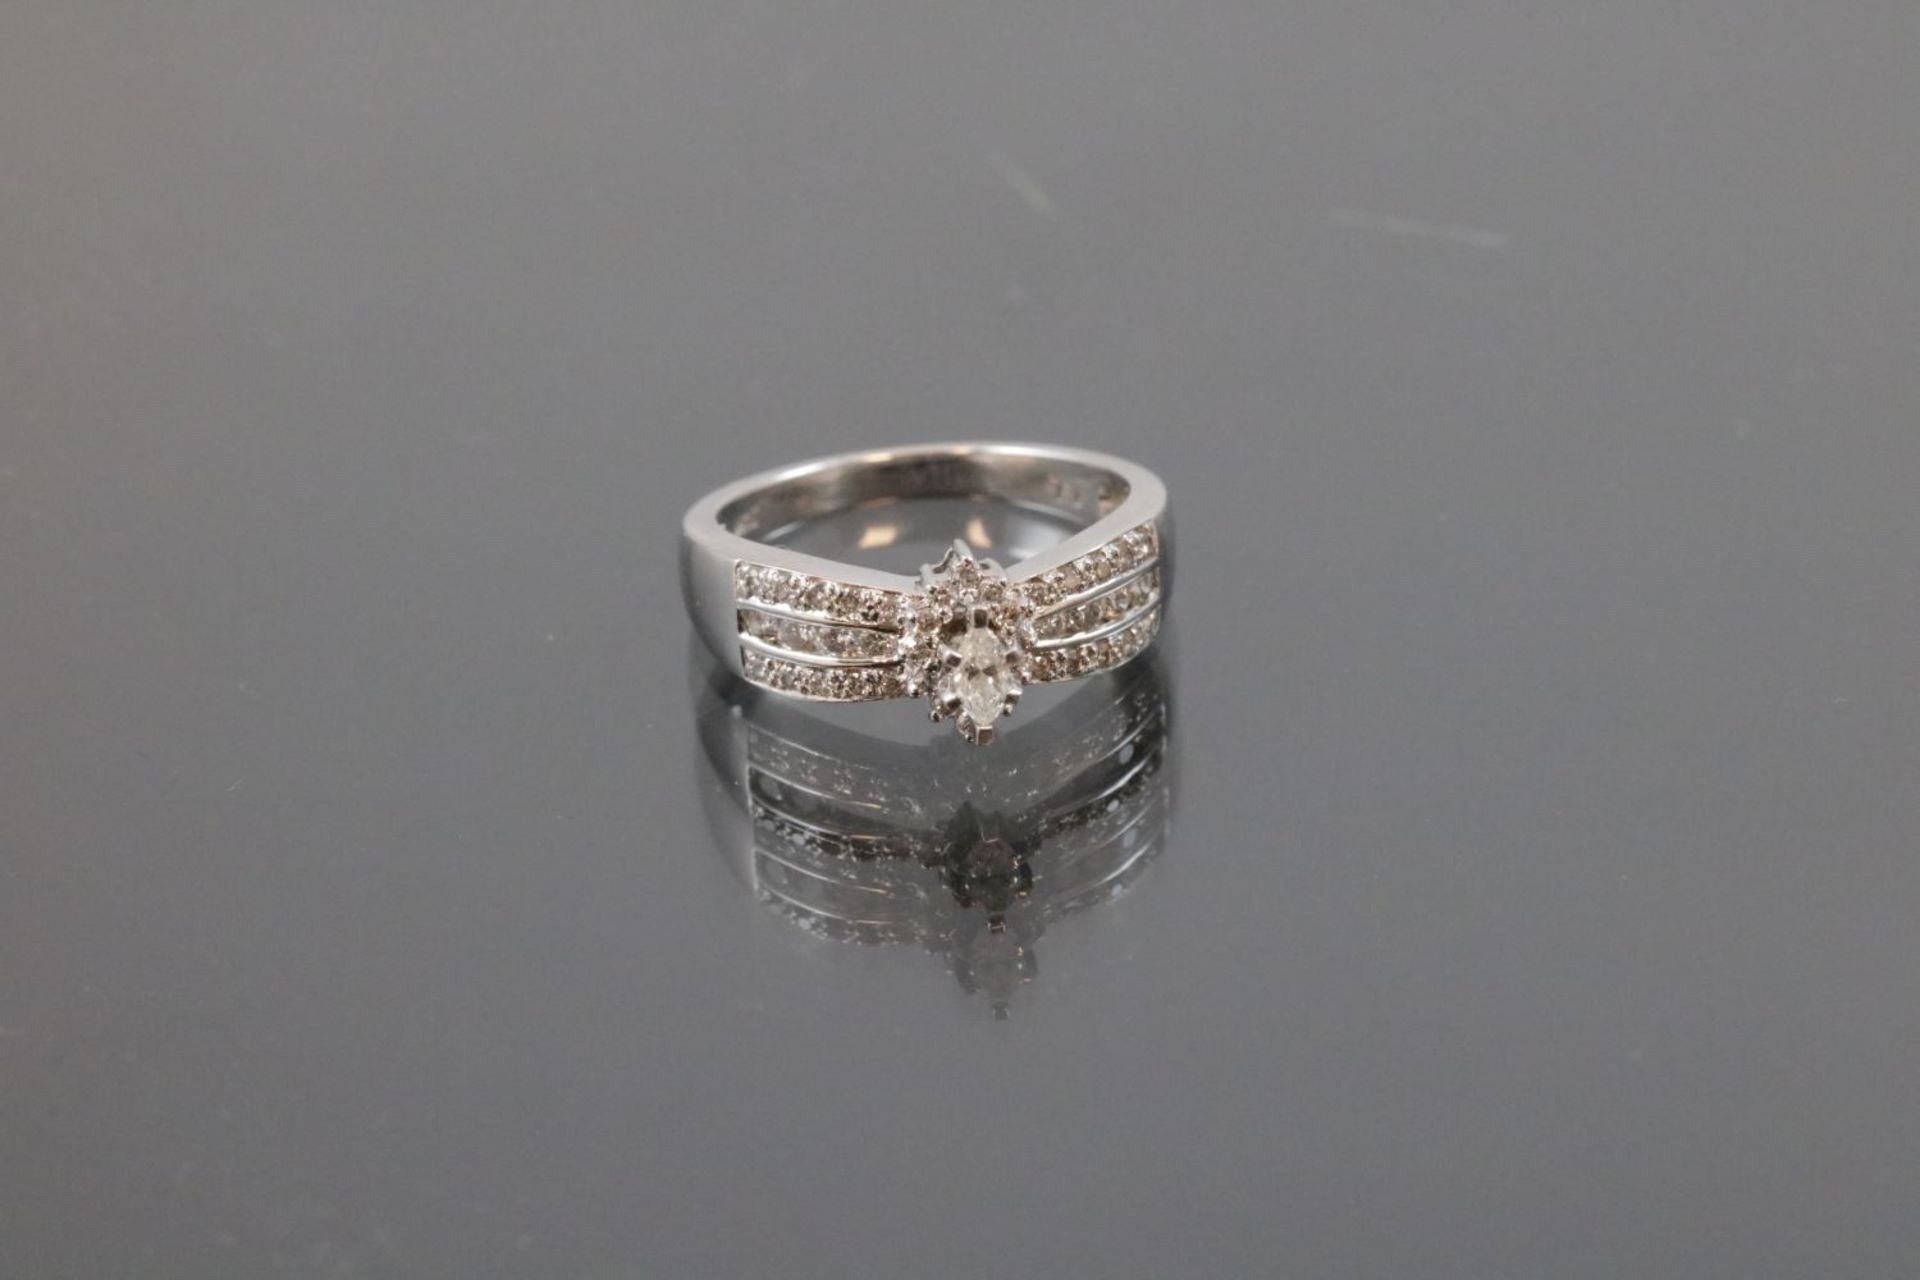 Brillant-Diamant-Ring, 585 Weißgold4,1 Gramm Brillanten/Diamanten, 0,60 ct., w/si. Ringgröße: